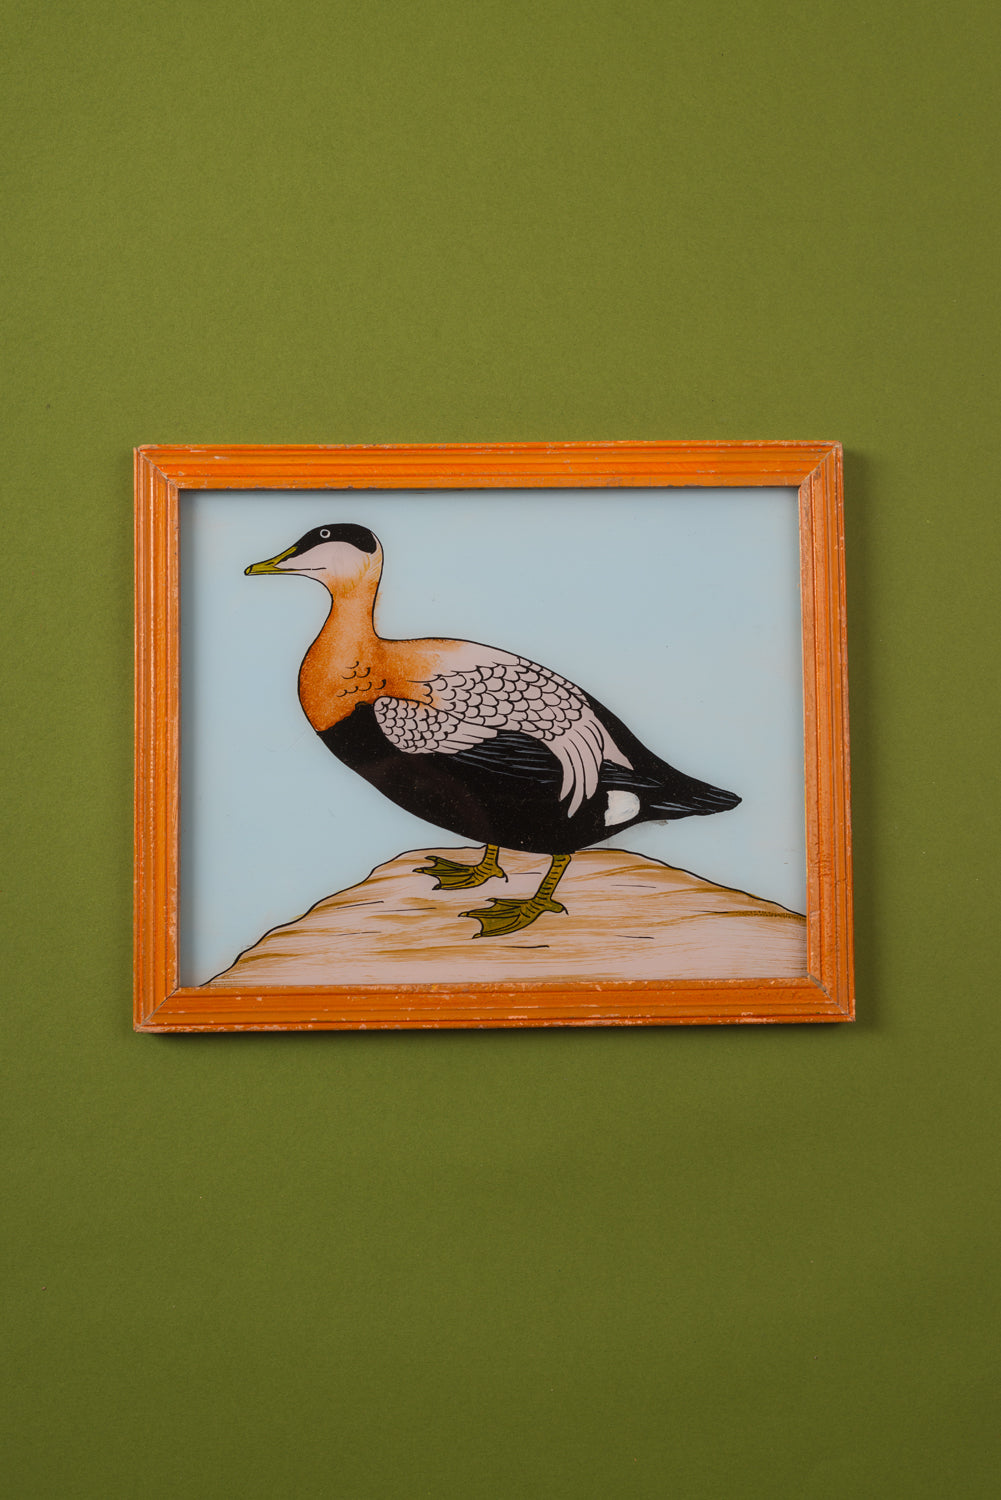 Medium Old Wood Frame with Botanical/Wildlife Painting - 548